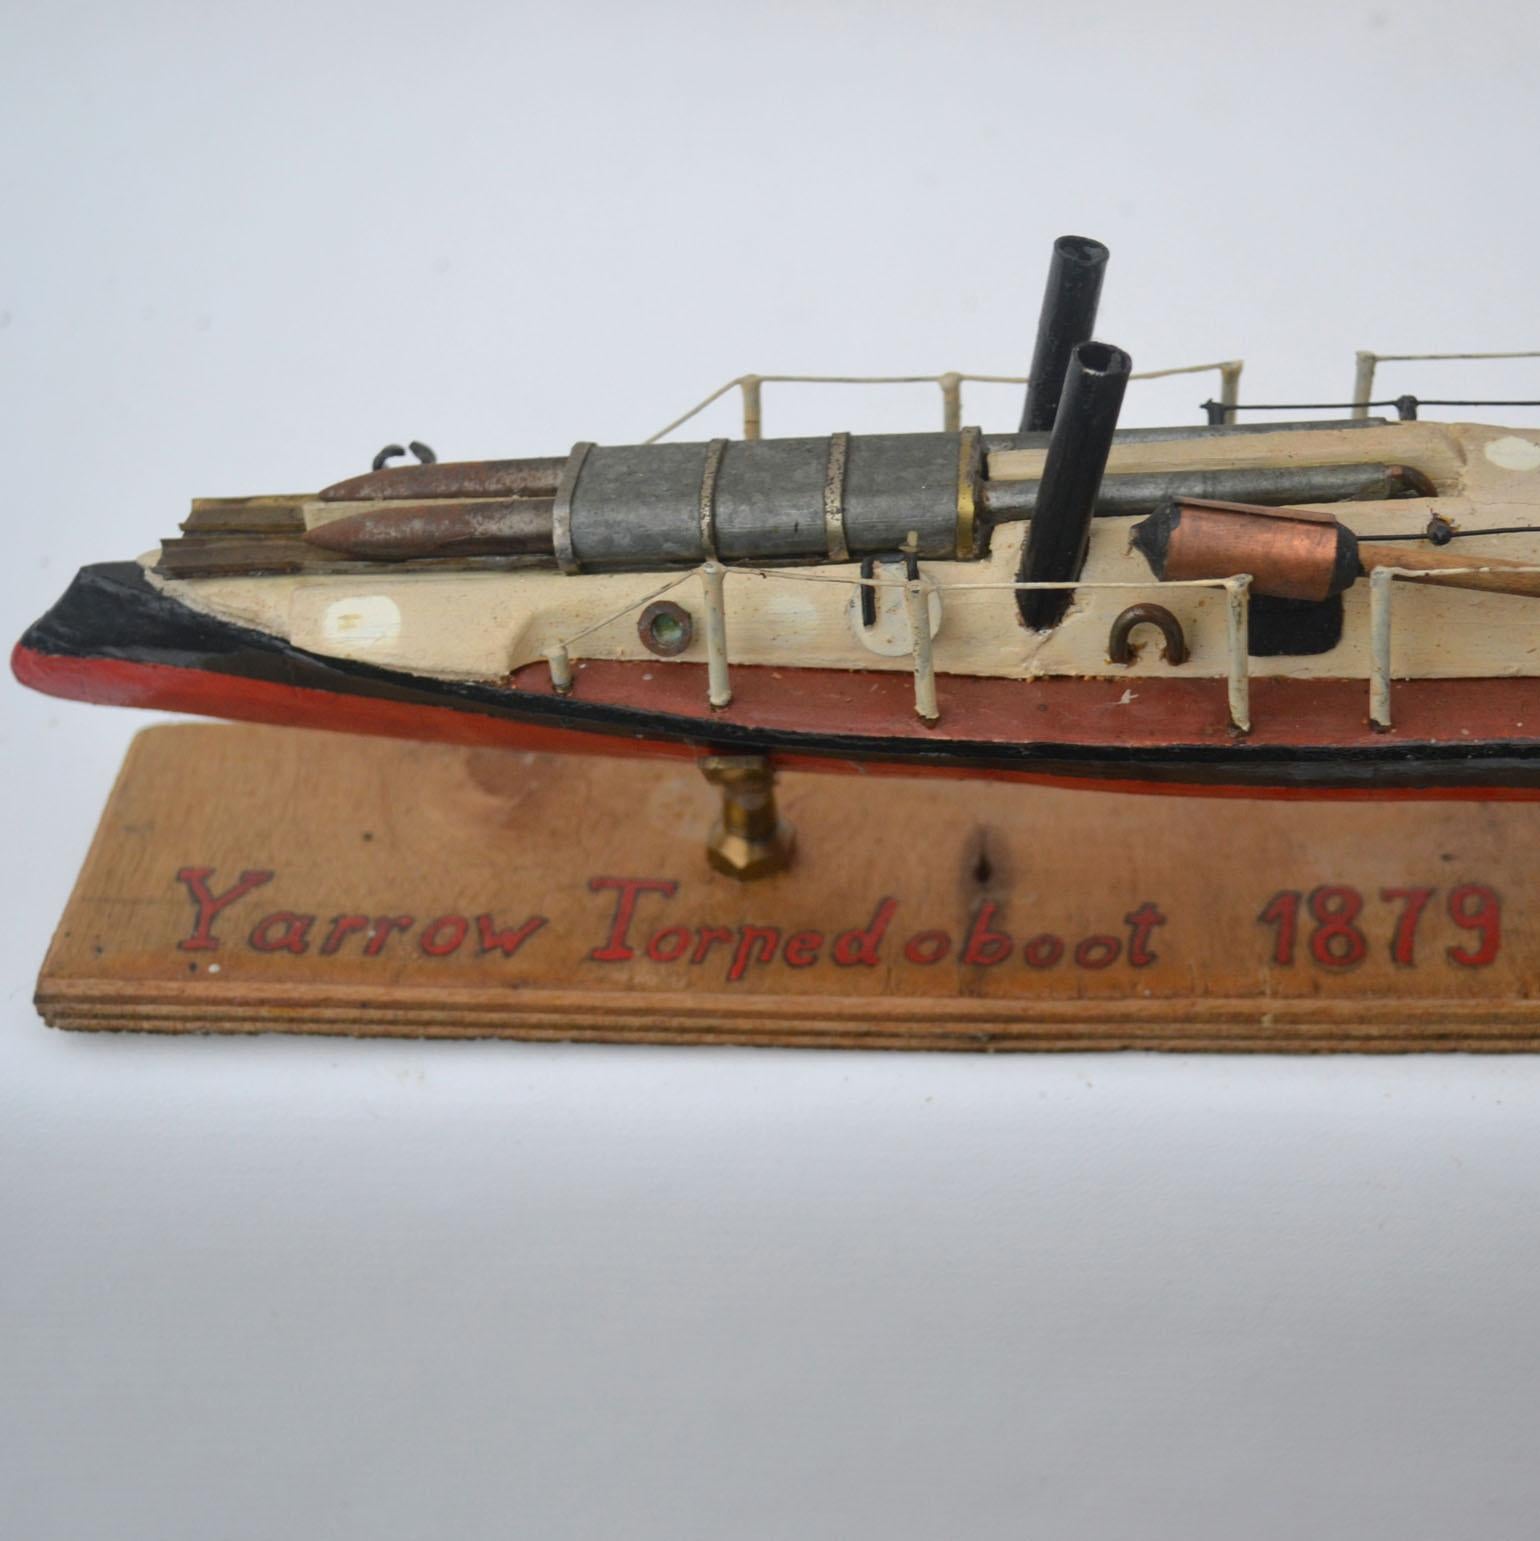 Early 20th Century Model of 'Yarrow' Torpedo Boat, 1879